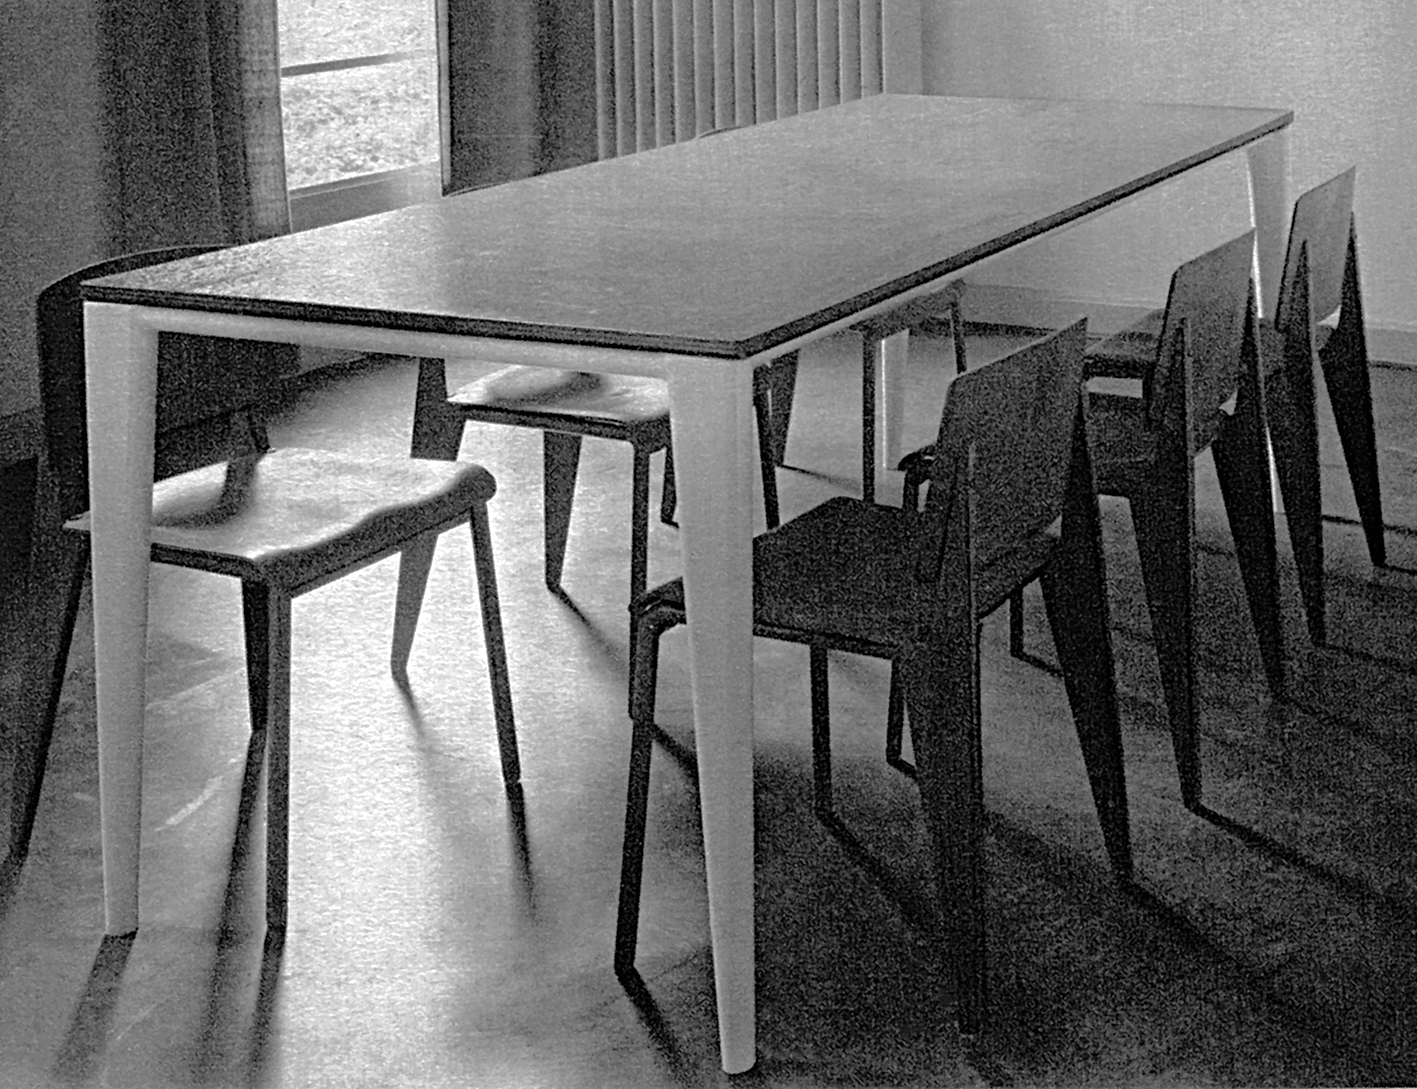 Table de réfectoire à pieds profilés, c. 1936. Lycée Fabert, Metz.